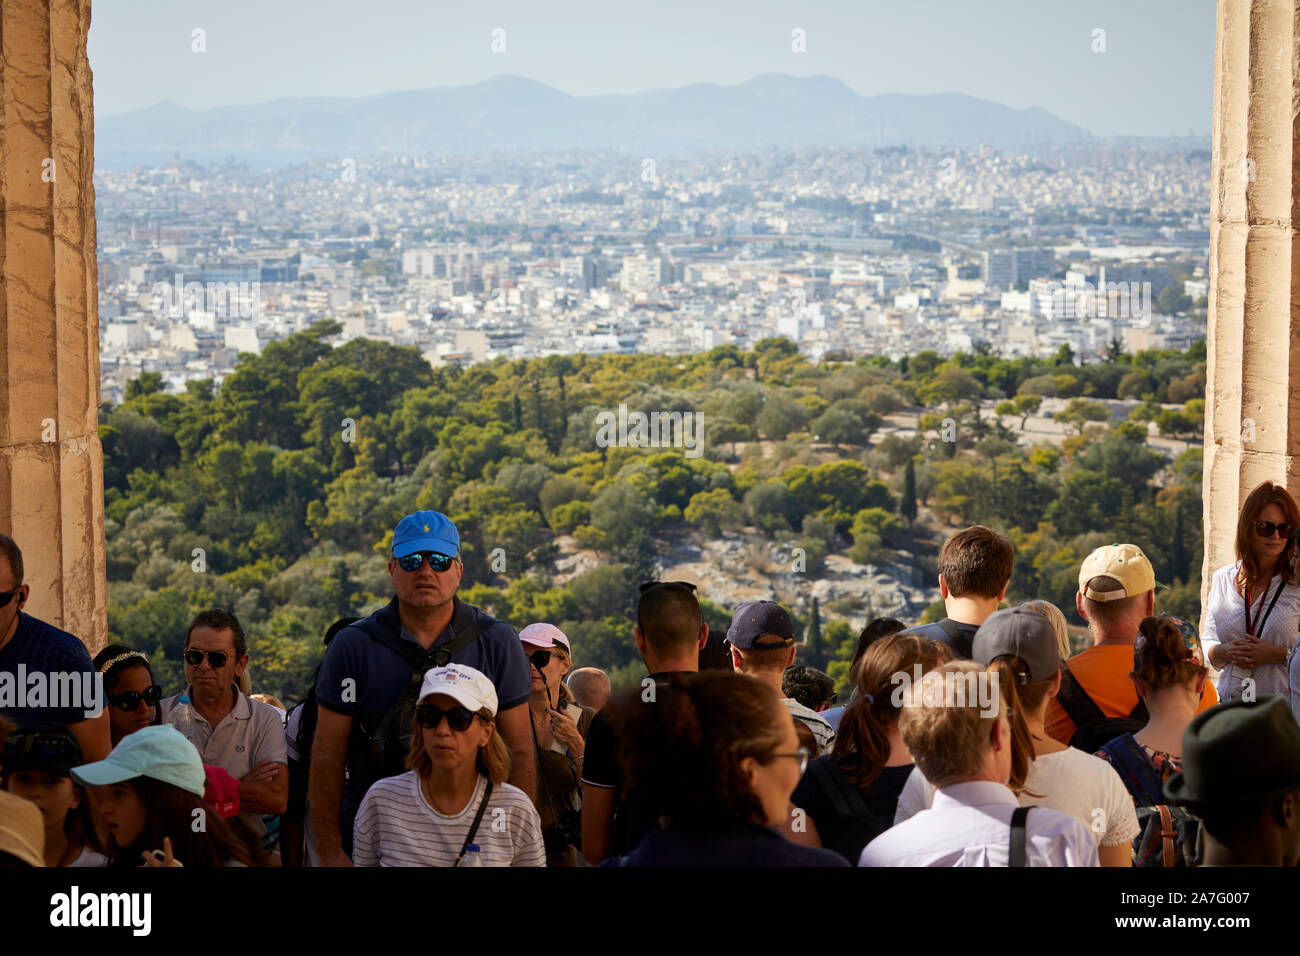 Atene capitale della Grecia vista dal punto di riferimento le rovine del tempio Parthenon Acropoli di Atene, situato sulla cima di una collina rocciosa, che domina la città di Atene Foto Stock